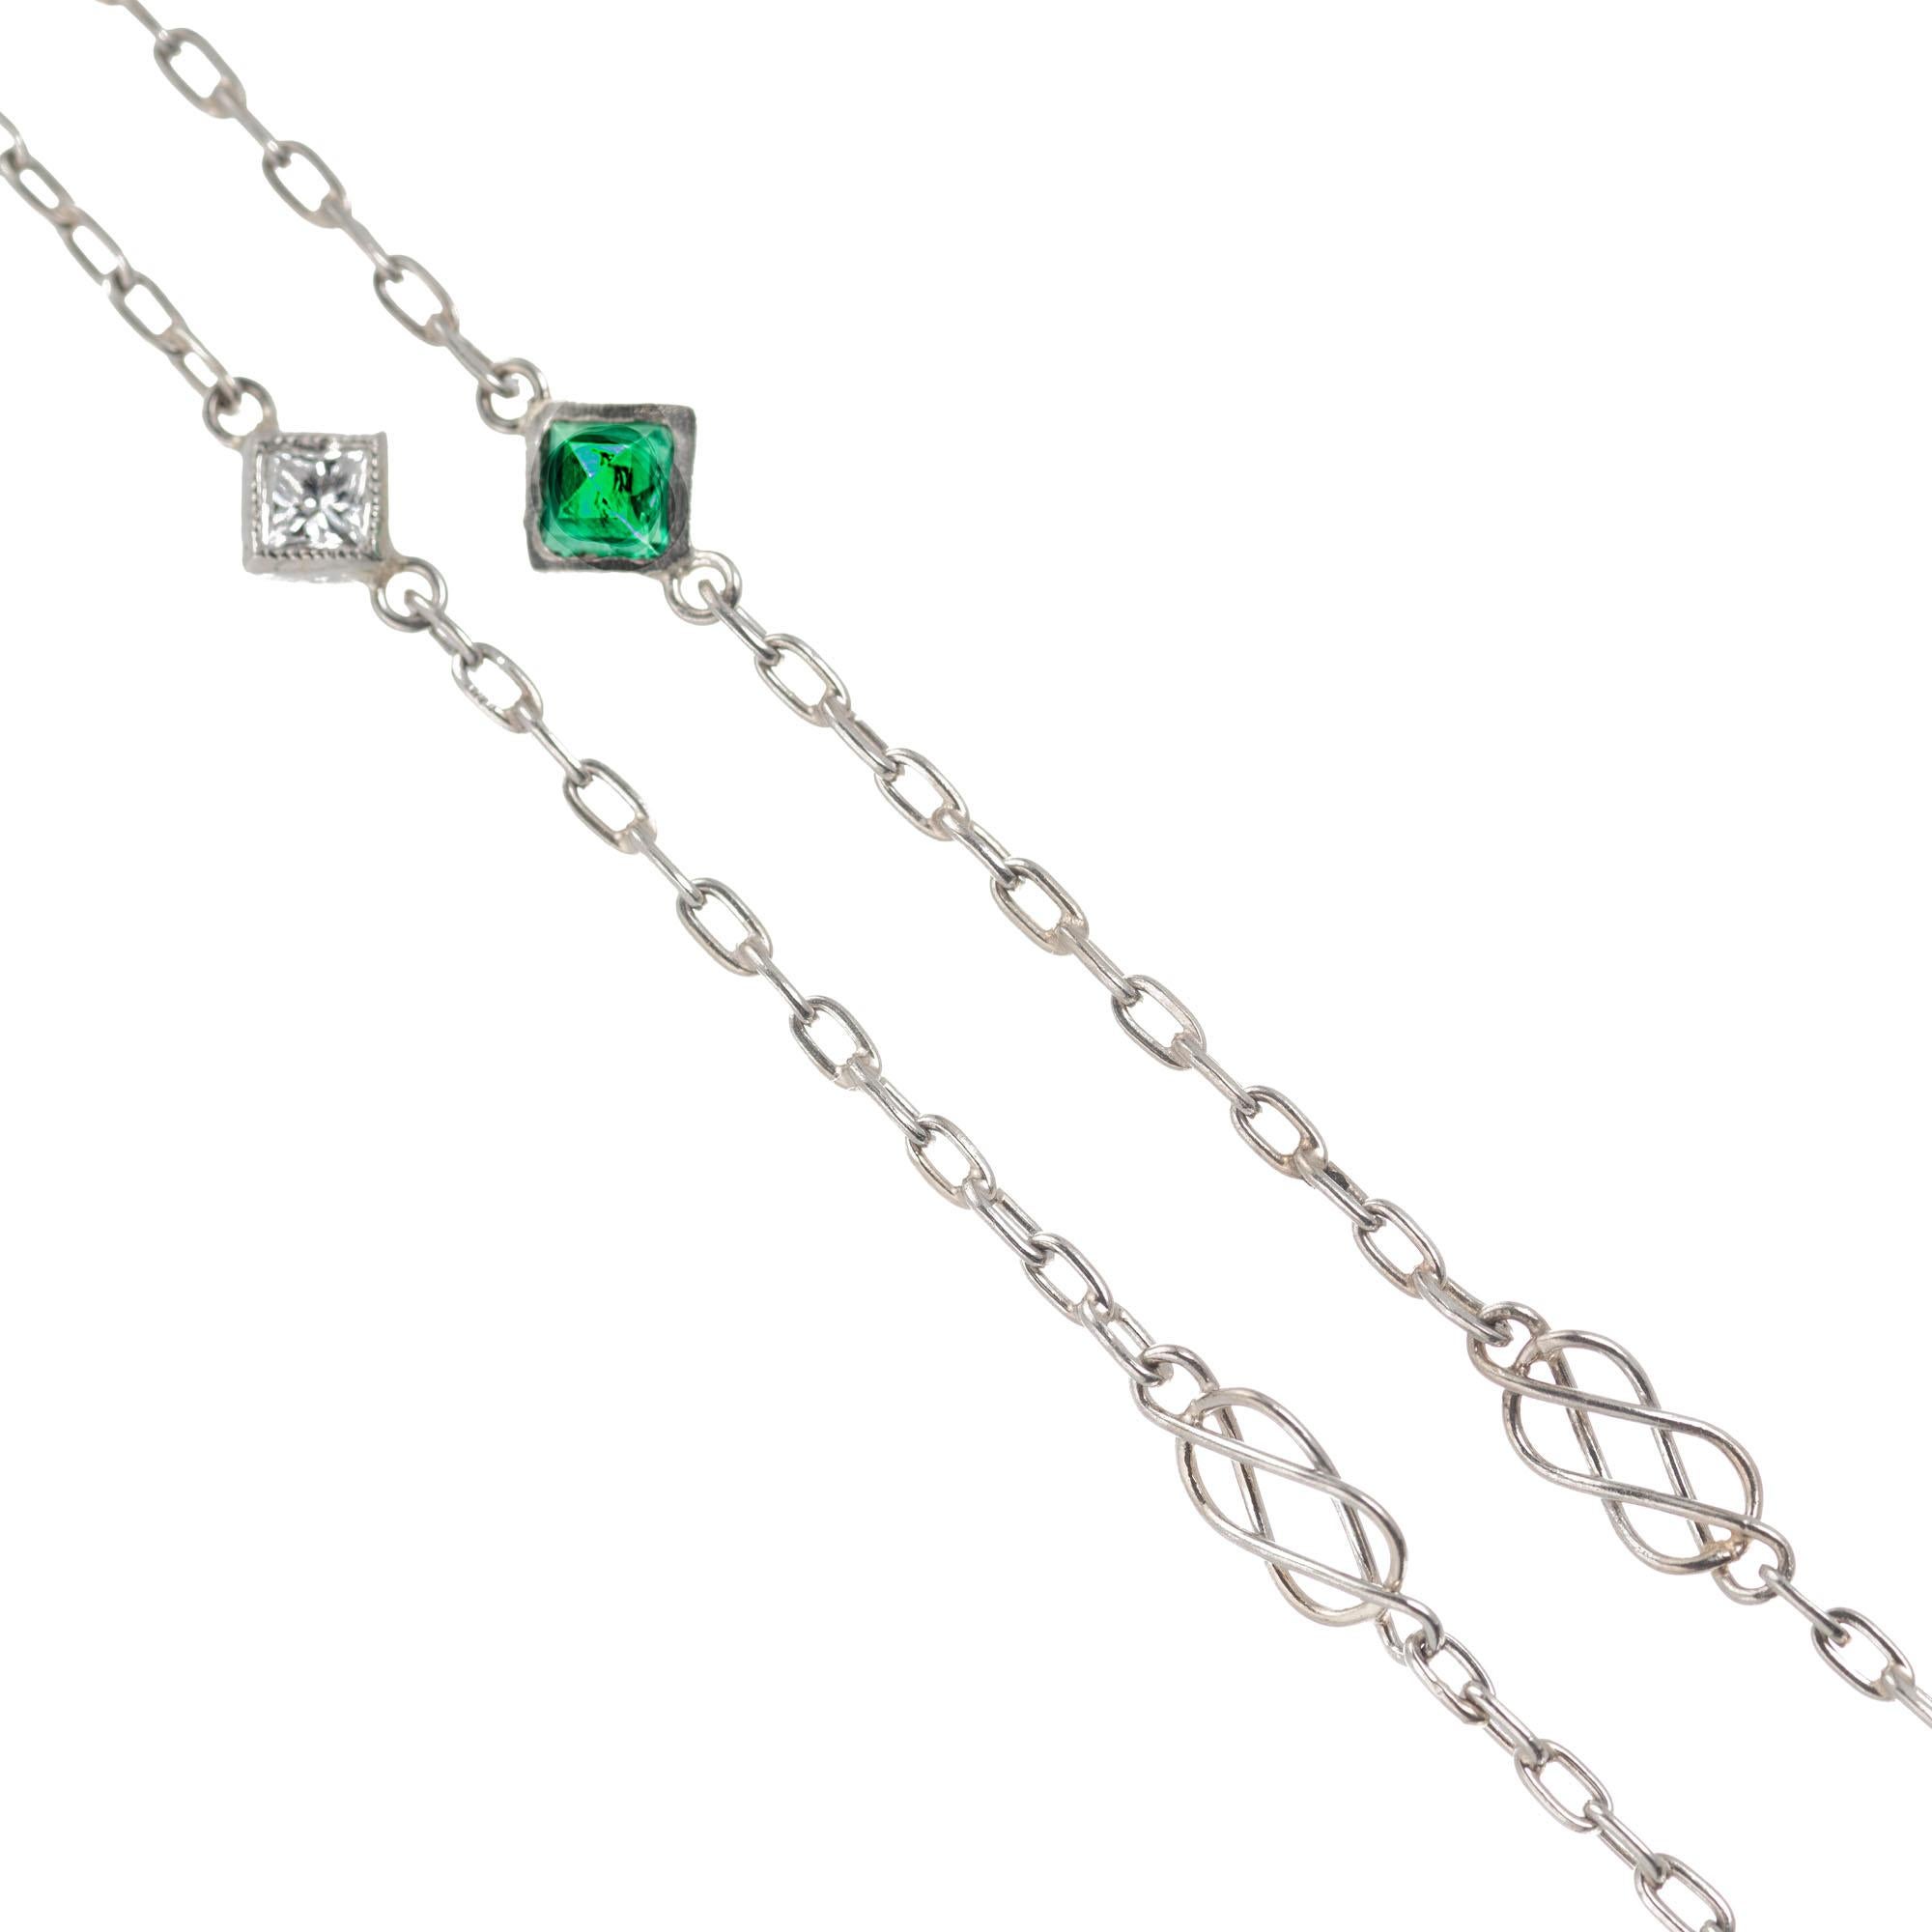 Quadratische Smaragd- und Diamantenkette aus Platin mit Diamanten als Meterware. Die Kette ist 44 Zoll lang und kann lang oder doppelt getragen werden.

10 grüne Smaragde mit Quadratschliff MI, ca. .50cts
10 Diamanten im Prinzessinnenschliff I-J VS,